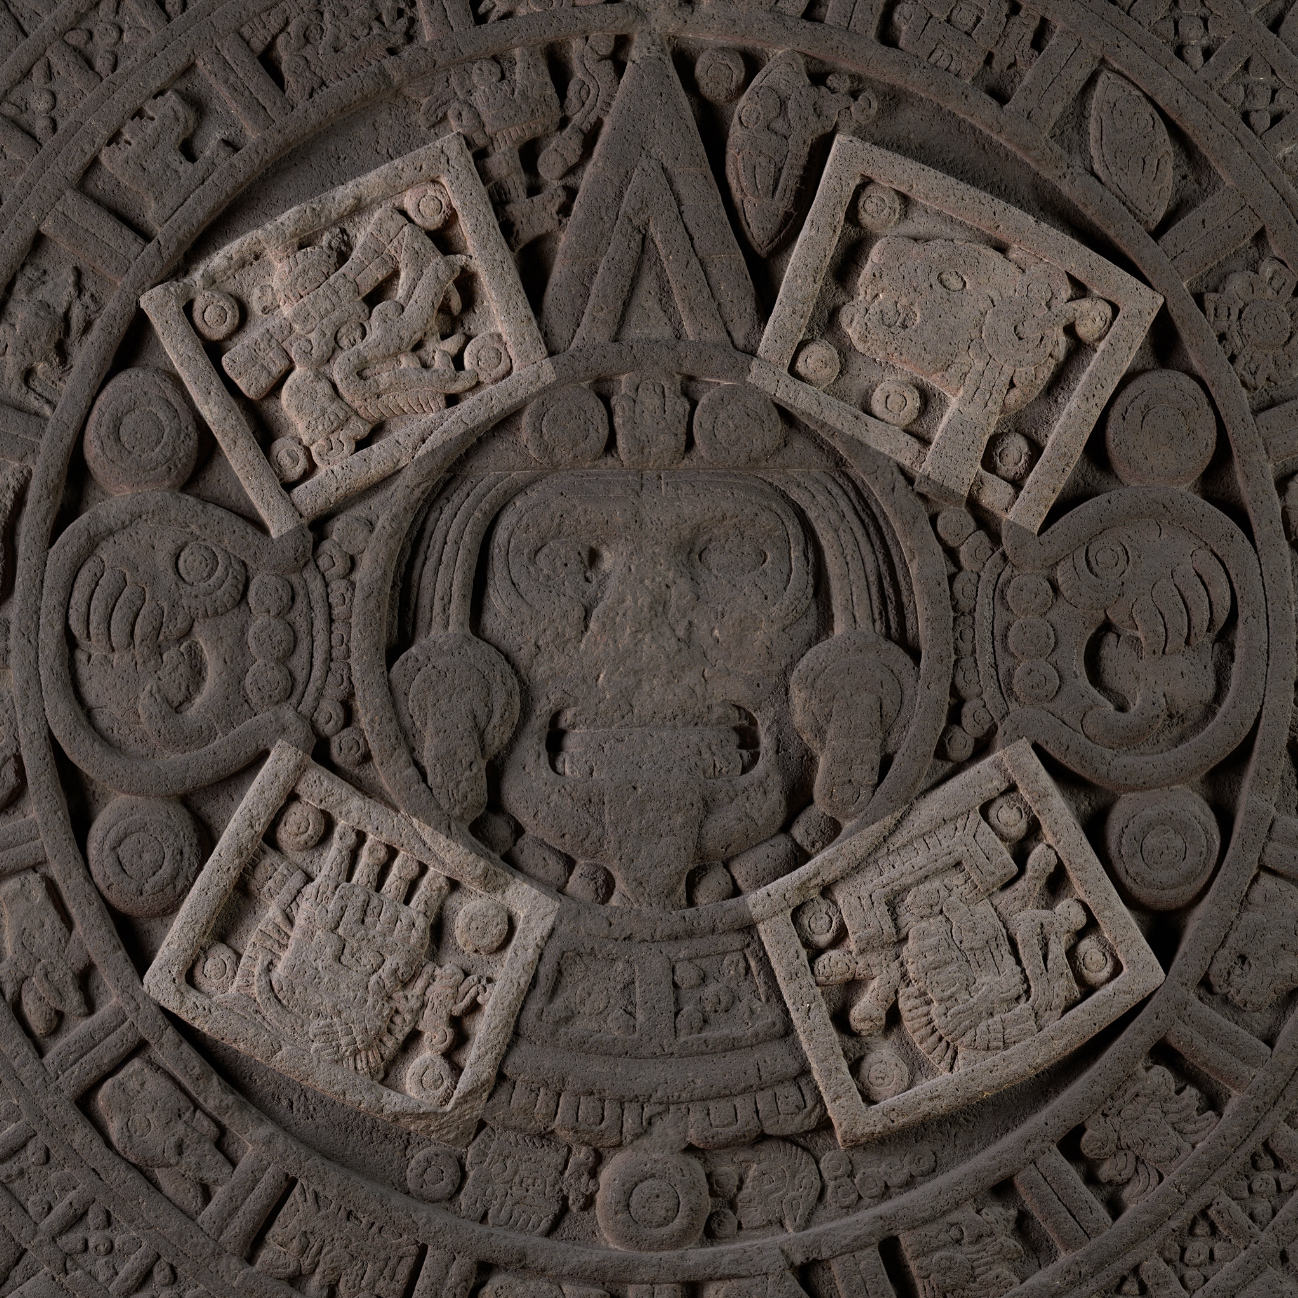 4 предшествующие эпохи. Камень солнца. Ацтеки (?), 1250-1500 гг. н.э. Коллекция Museo Nacional de Antropologia, Мехико.